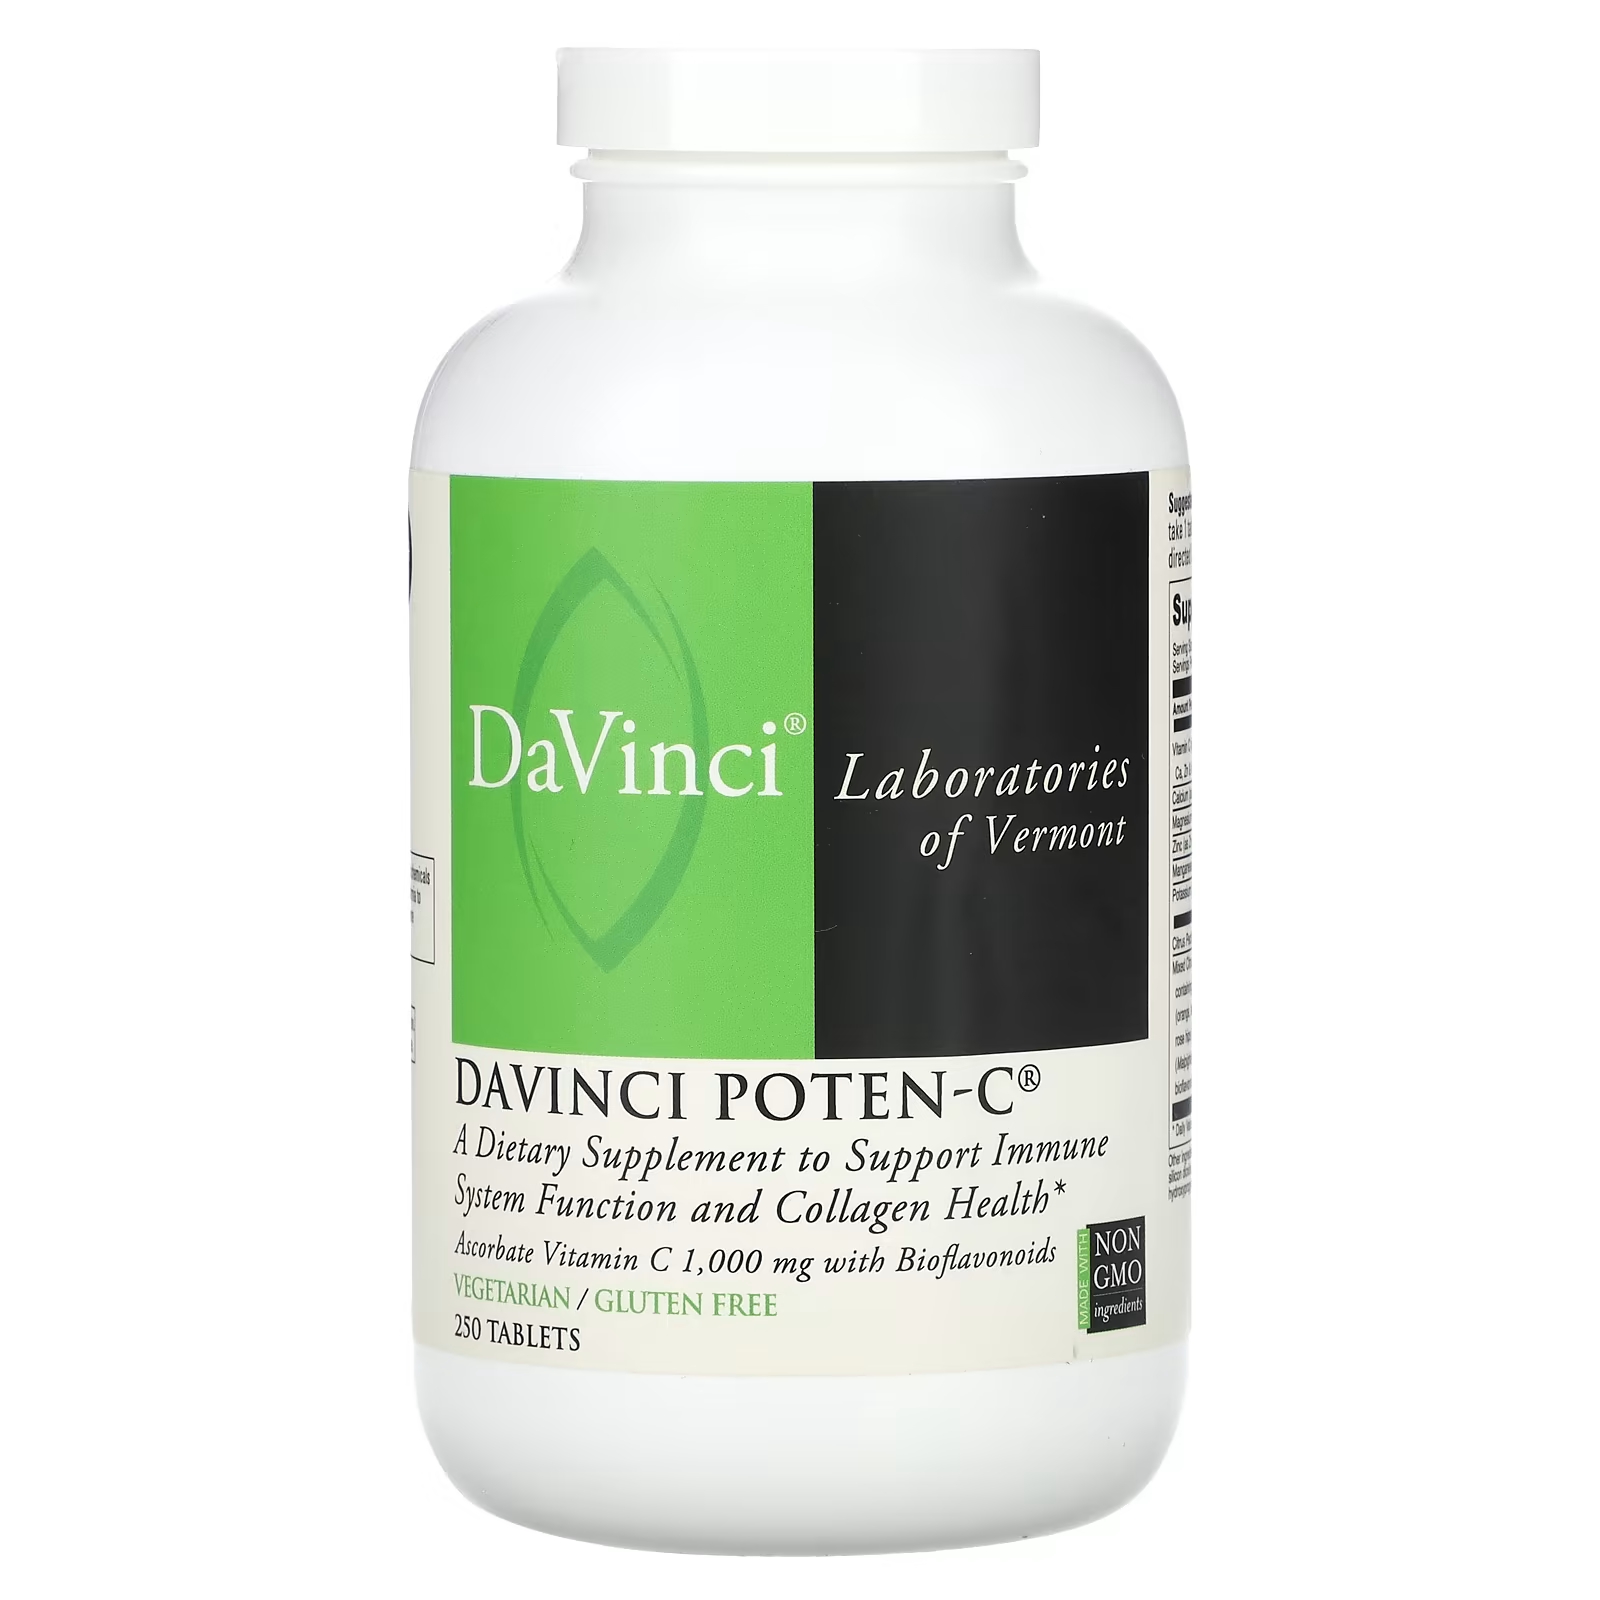 Пищевая добавка DaVinci Laboratories of Vermont Davinci Poten-C, 250 таблеток nutribiotic immunity аскорбат bio c витамин c с биофлавоноидами и минералами 1 кг 2 2 фунта